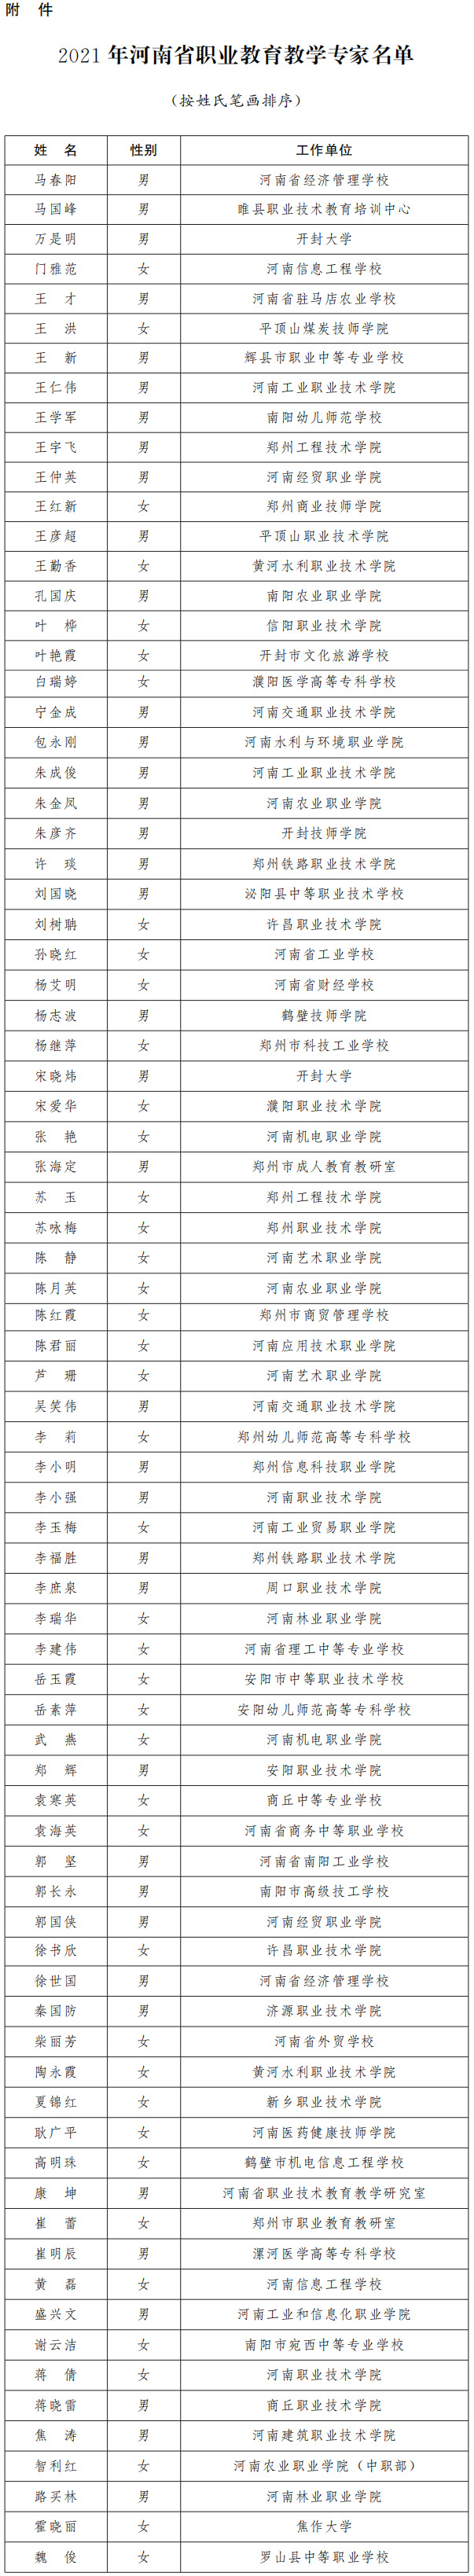 河南省人民政府办公厅关于公布2021年河南省职业教育教学专家名单的通知